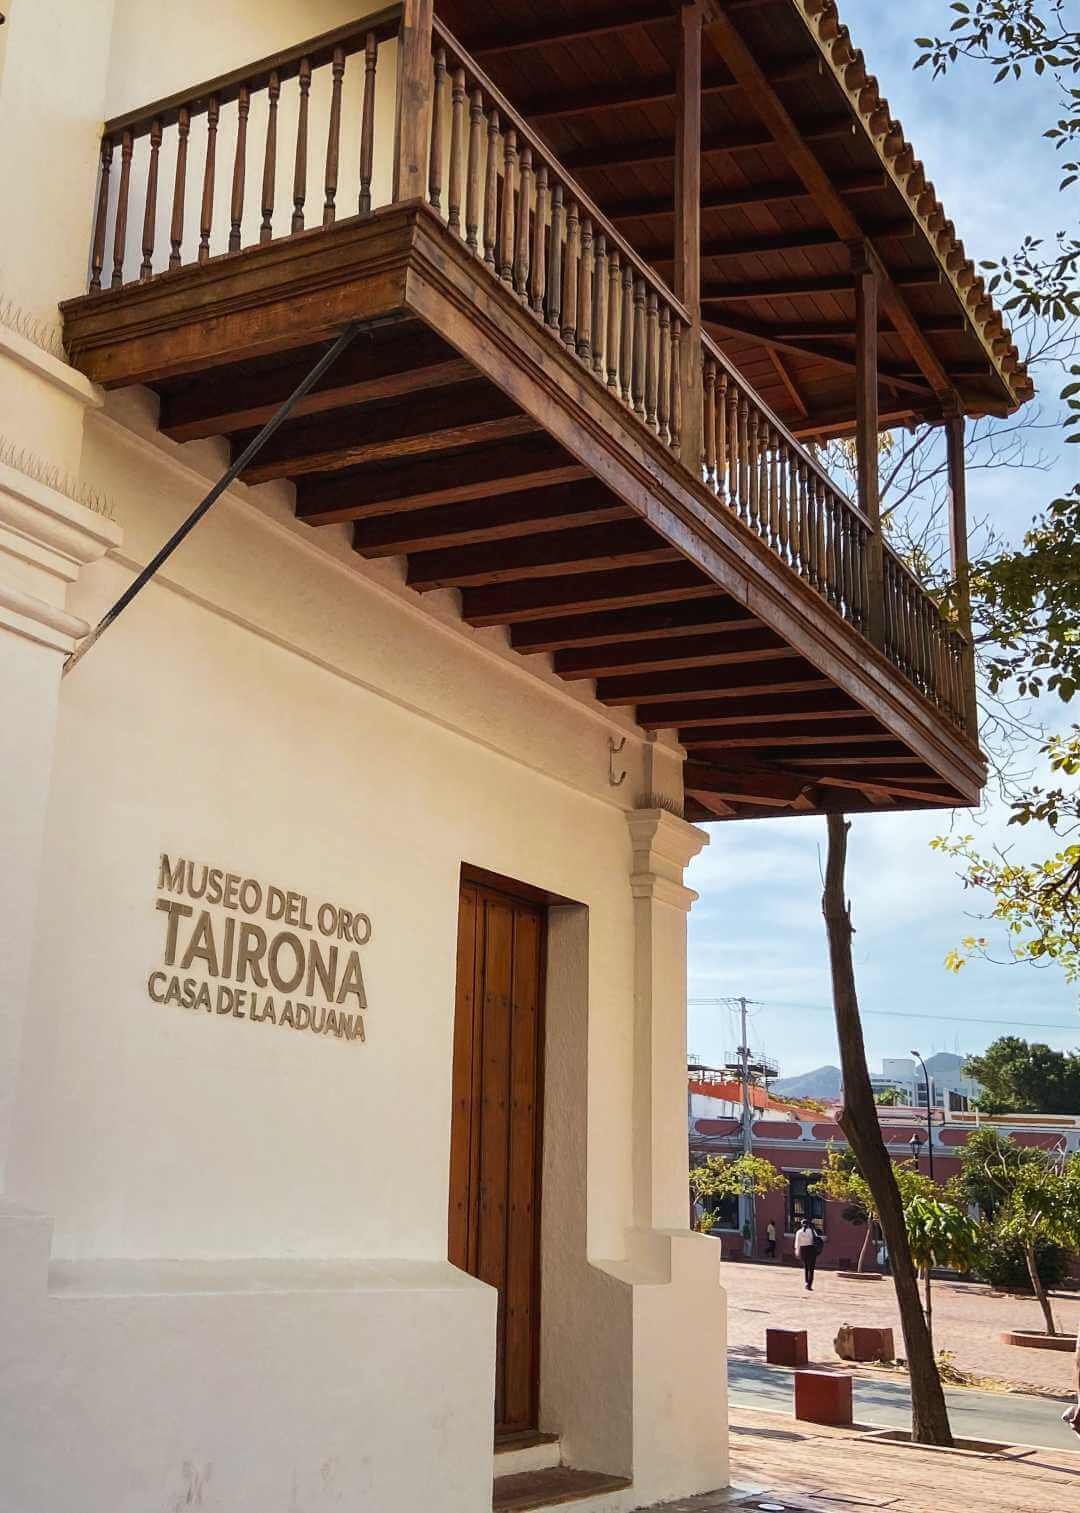 Museo del Oro Tairona